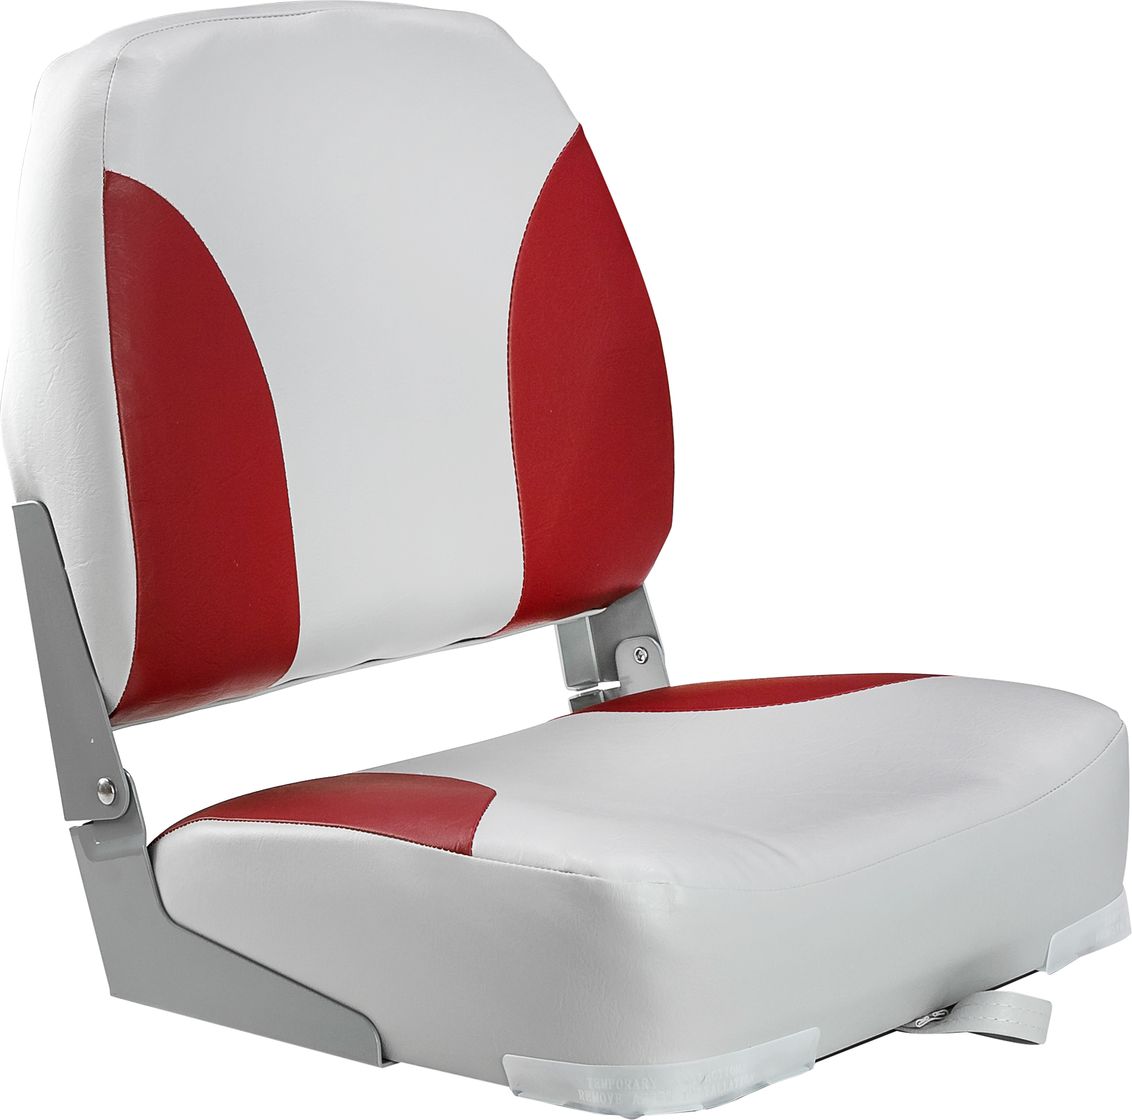 Кресло мягкое складное Classic, обивка винил, цвет серый/красный, Marine Rocket 75102GR-MR кресло складное мягкое traveler белый серый 1061104c